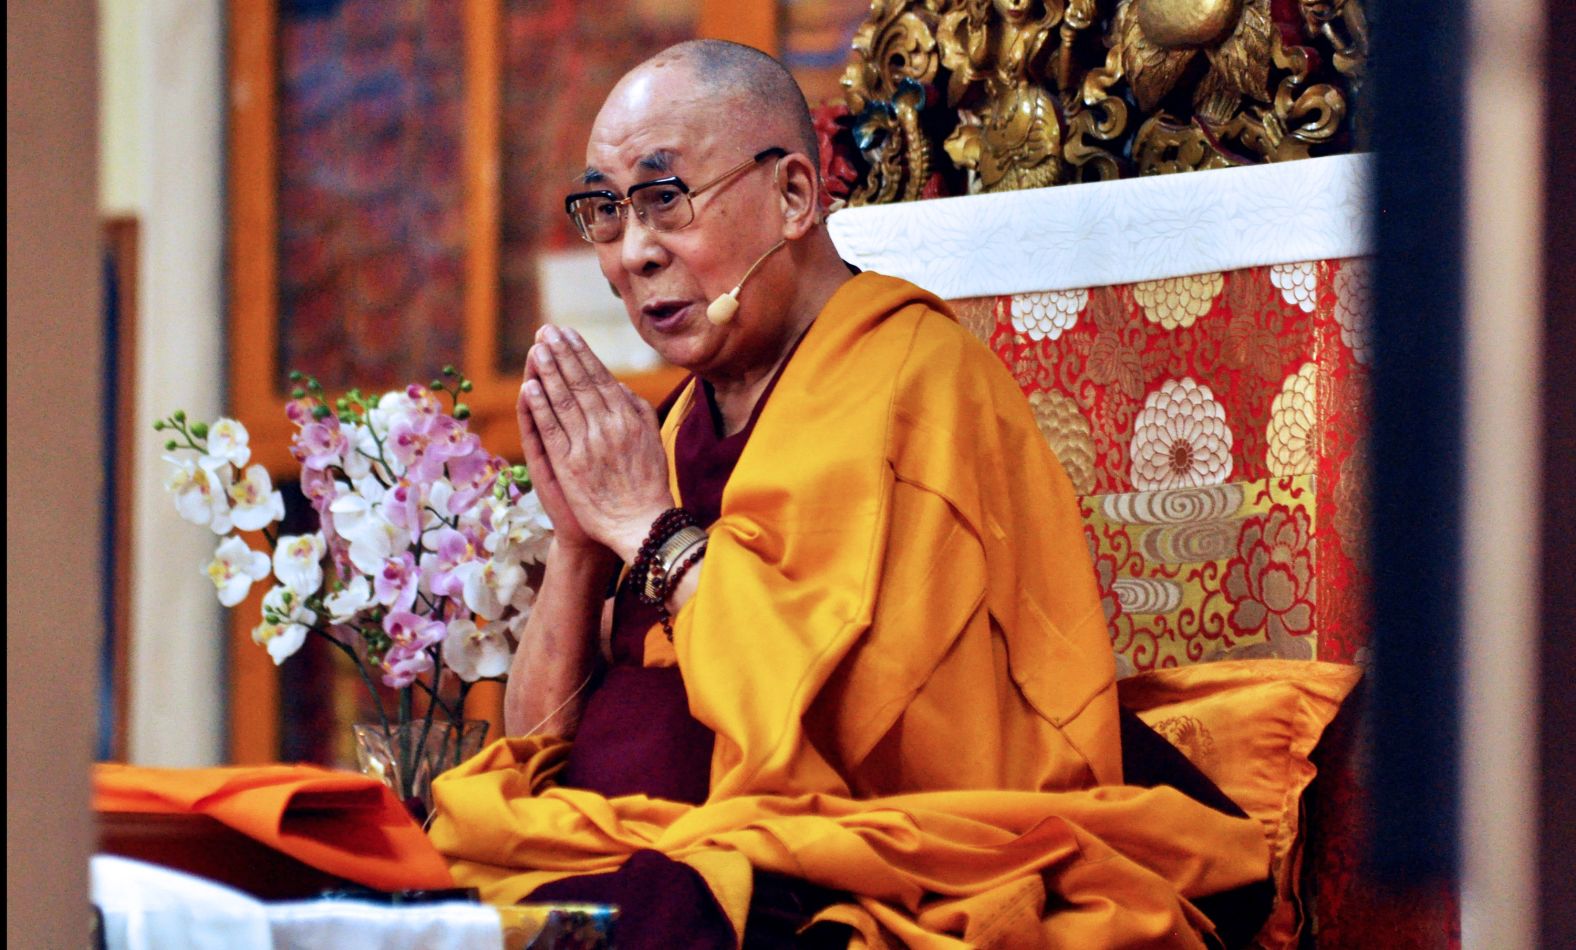 The Dalai Lama speaks at an event in Dharamshala, India, in June 2018.